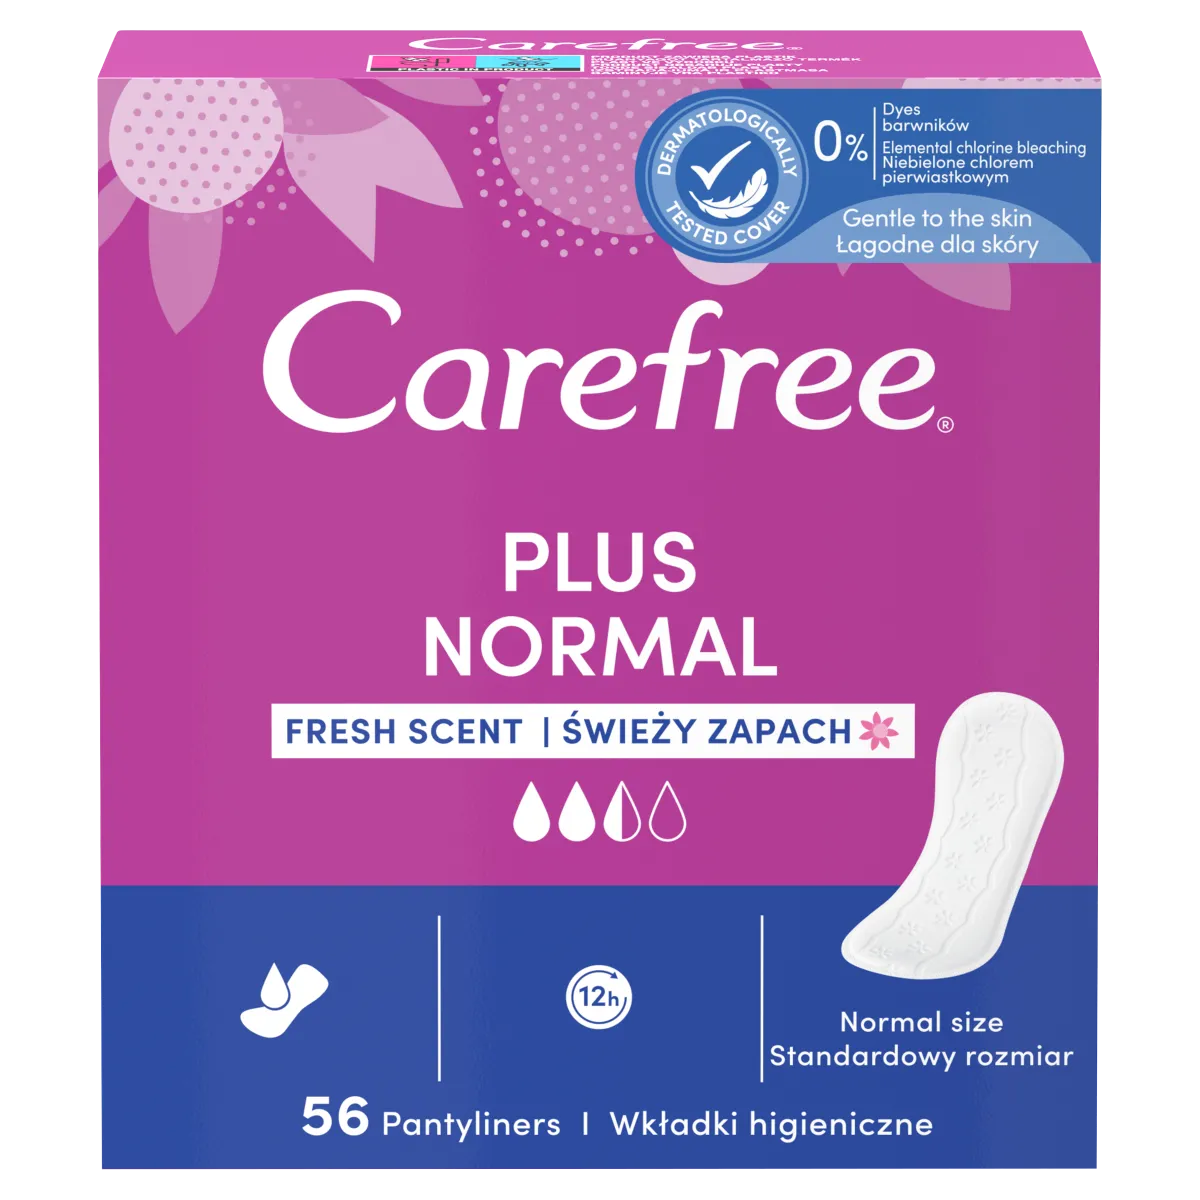 Carefree Plus Original Fresh Wkładki higieniczne, 56 szt.